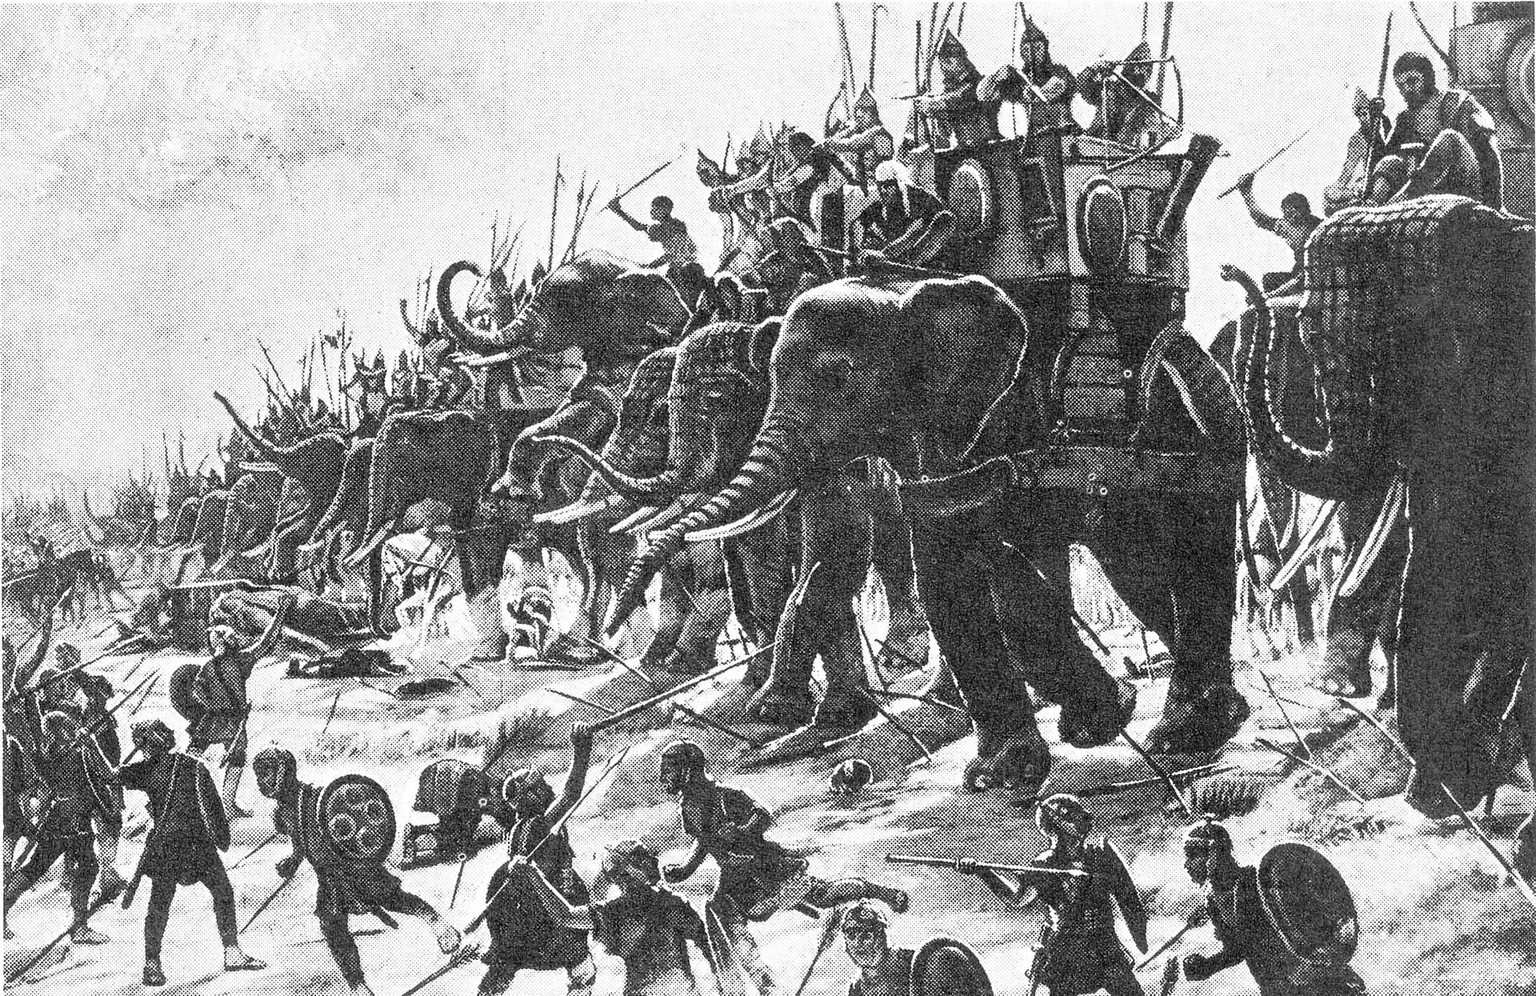 Henri-Paul Motte: Hannibals Elefanten in der Schlacht von Zama (202 v. Chr.). Historiengemälde des 19. Jahrhunderts.
https://de.wikipedia.org/wiki/Kriegselefant#/media/Datei:Schlacht_bei_Zama_Gemälde_ ...